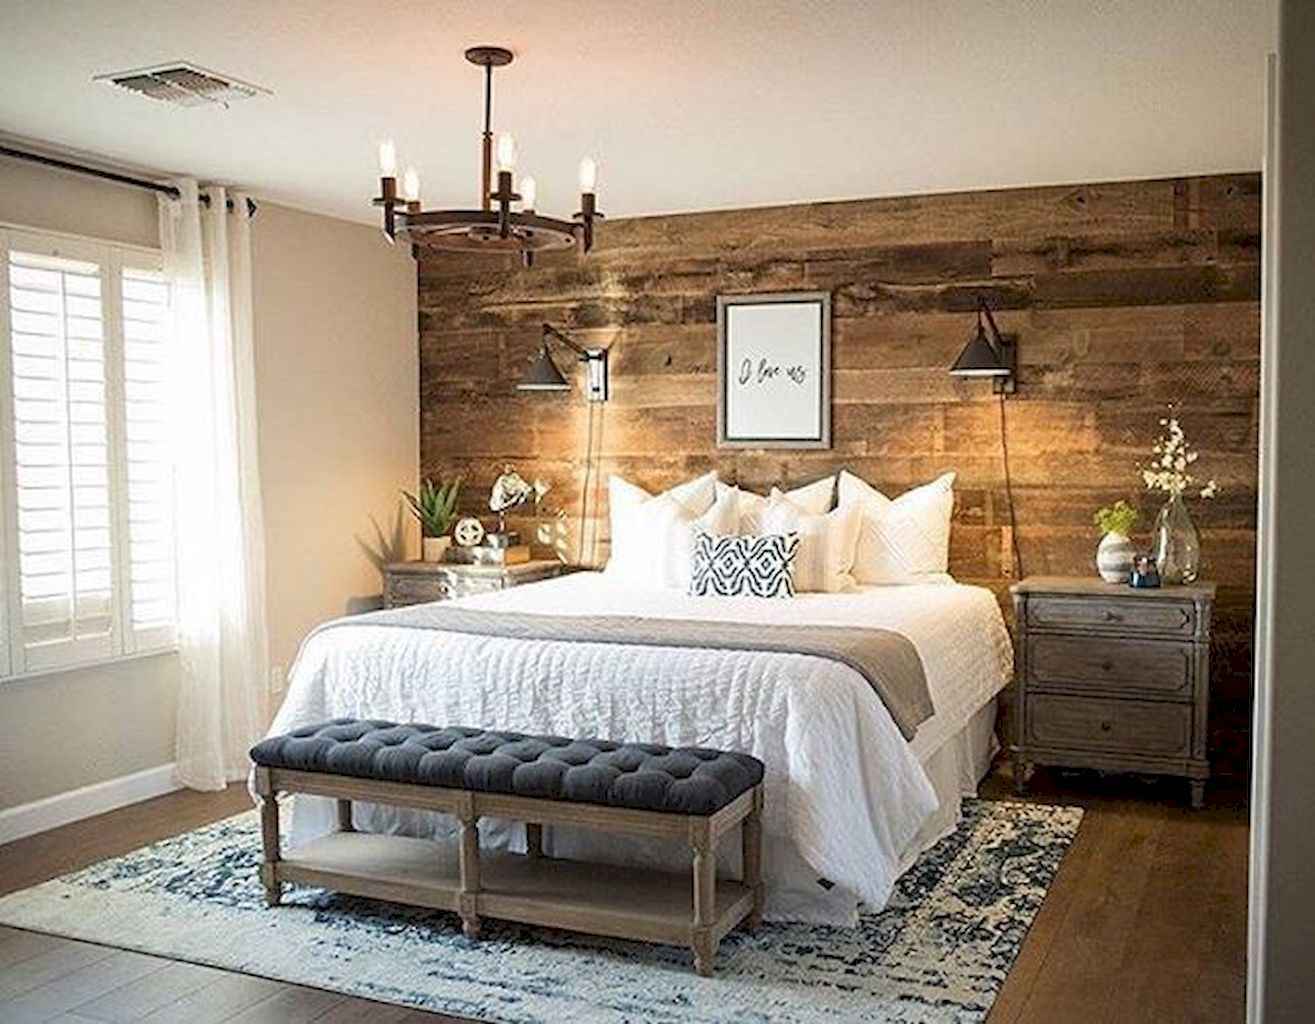 farmhouse bedroom master decor shiplap designs walls stunning